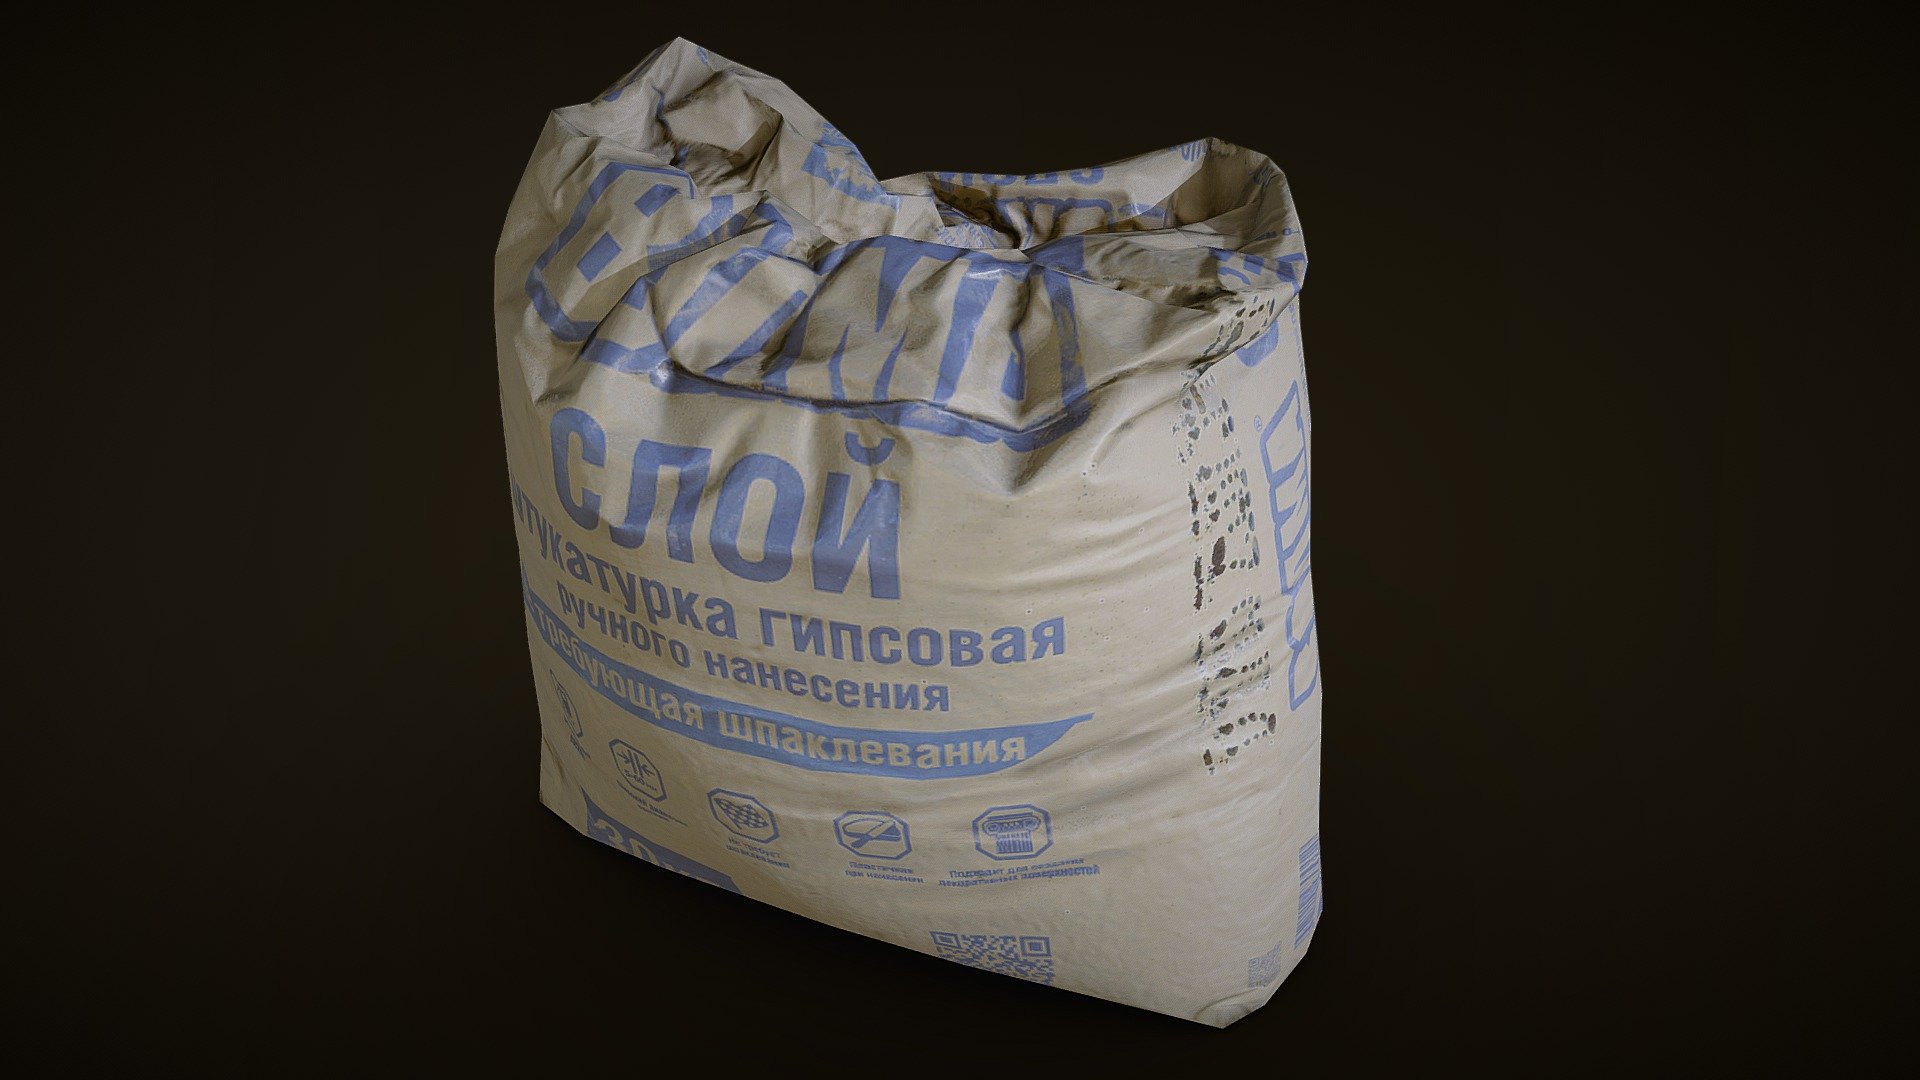 Photoscan( 100 photos ) - Paper Bag - 3D model by Alexander Komendant (SashaRX) (@Sasharx) 3d model